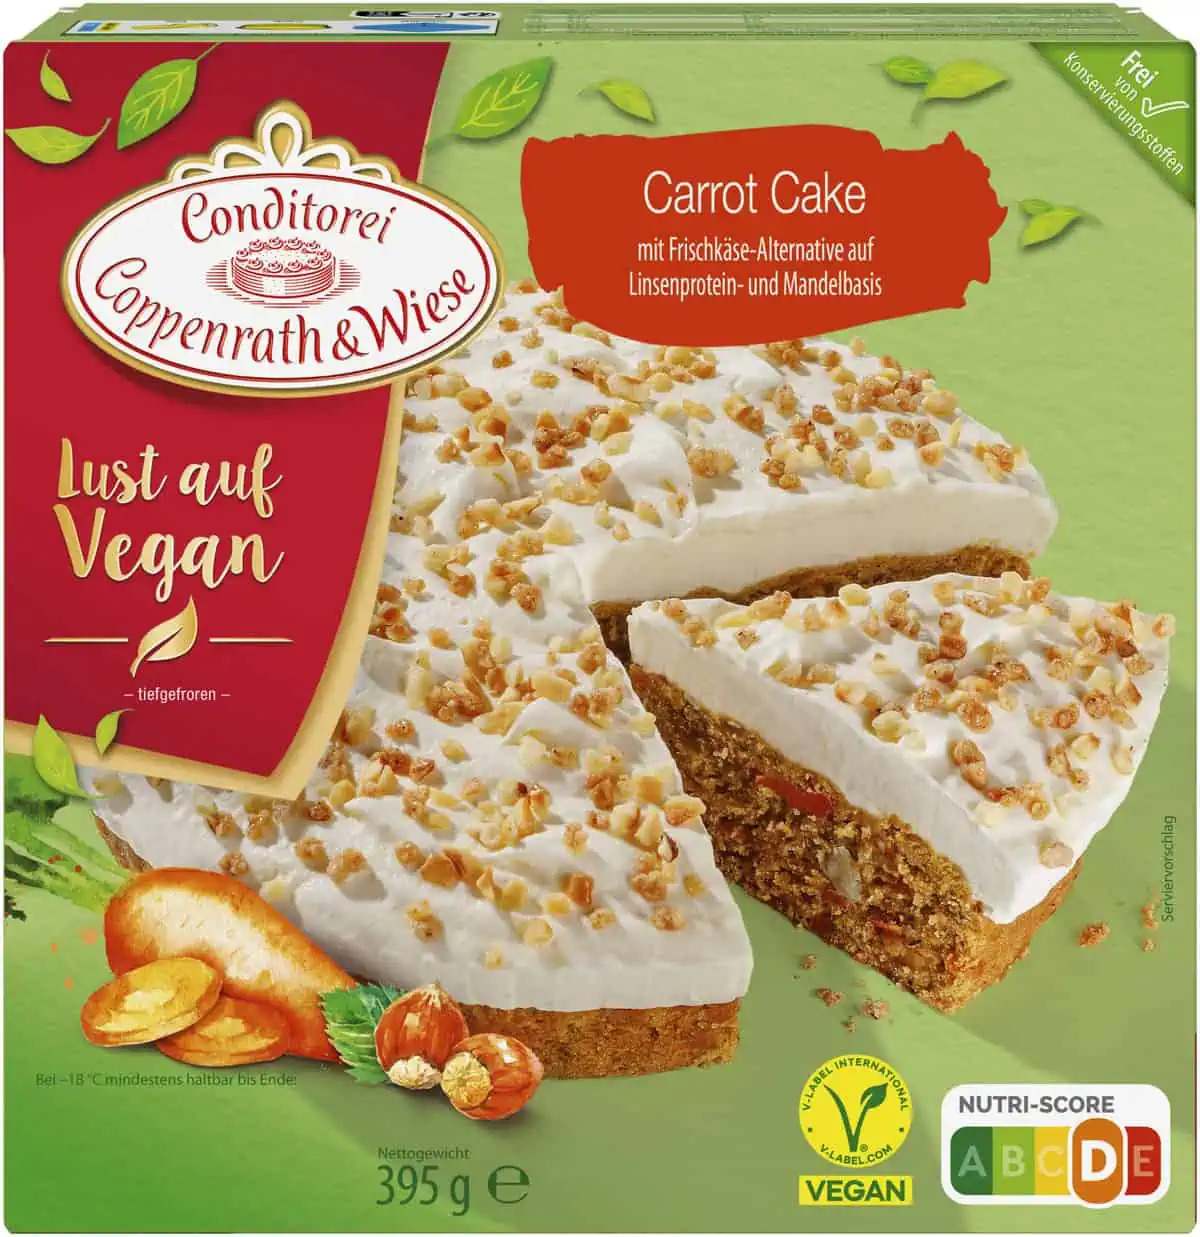 Neue vegane Torte von Coppenrath & Wiese